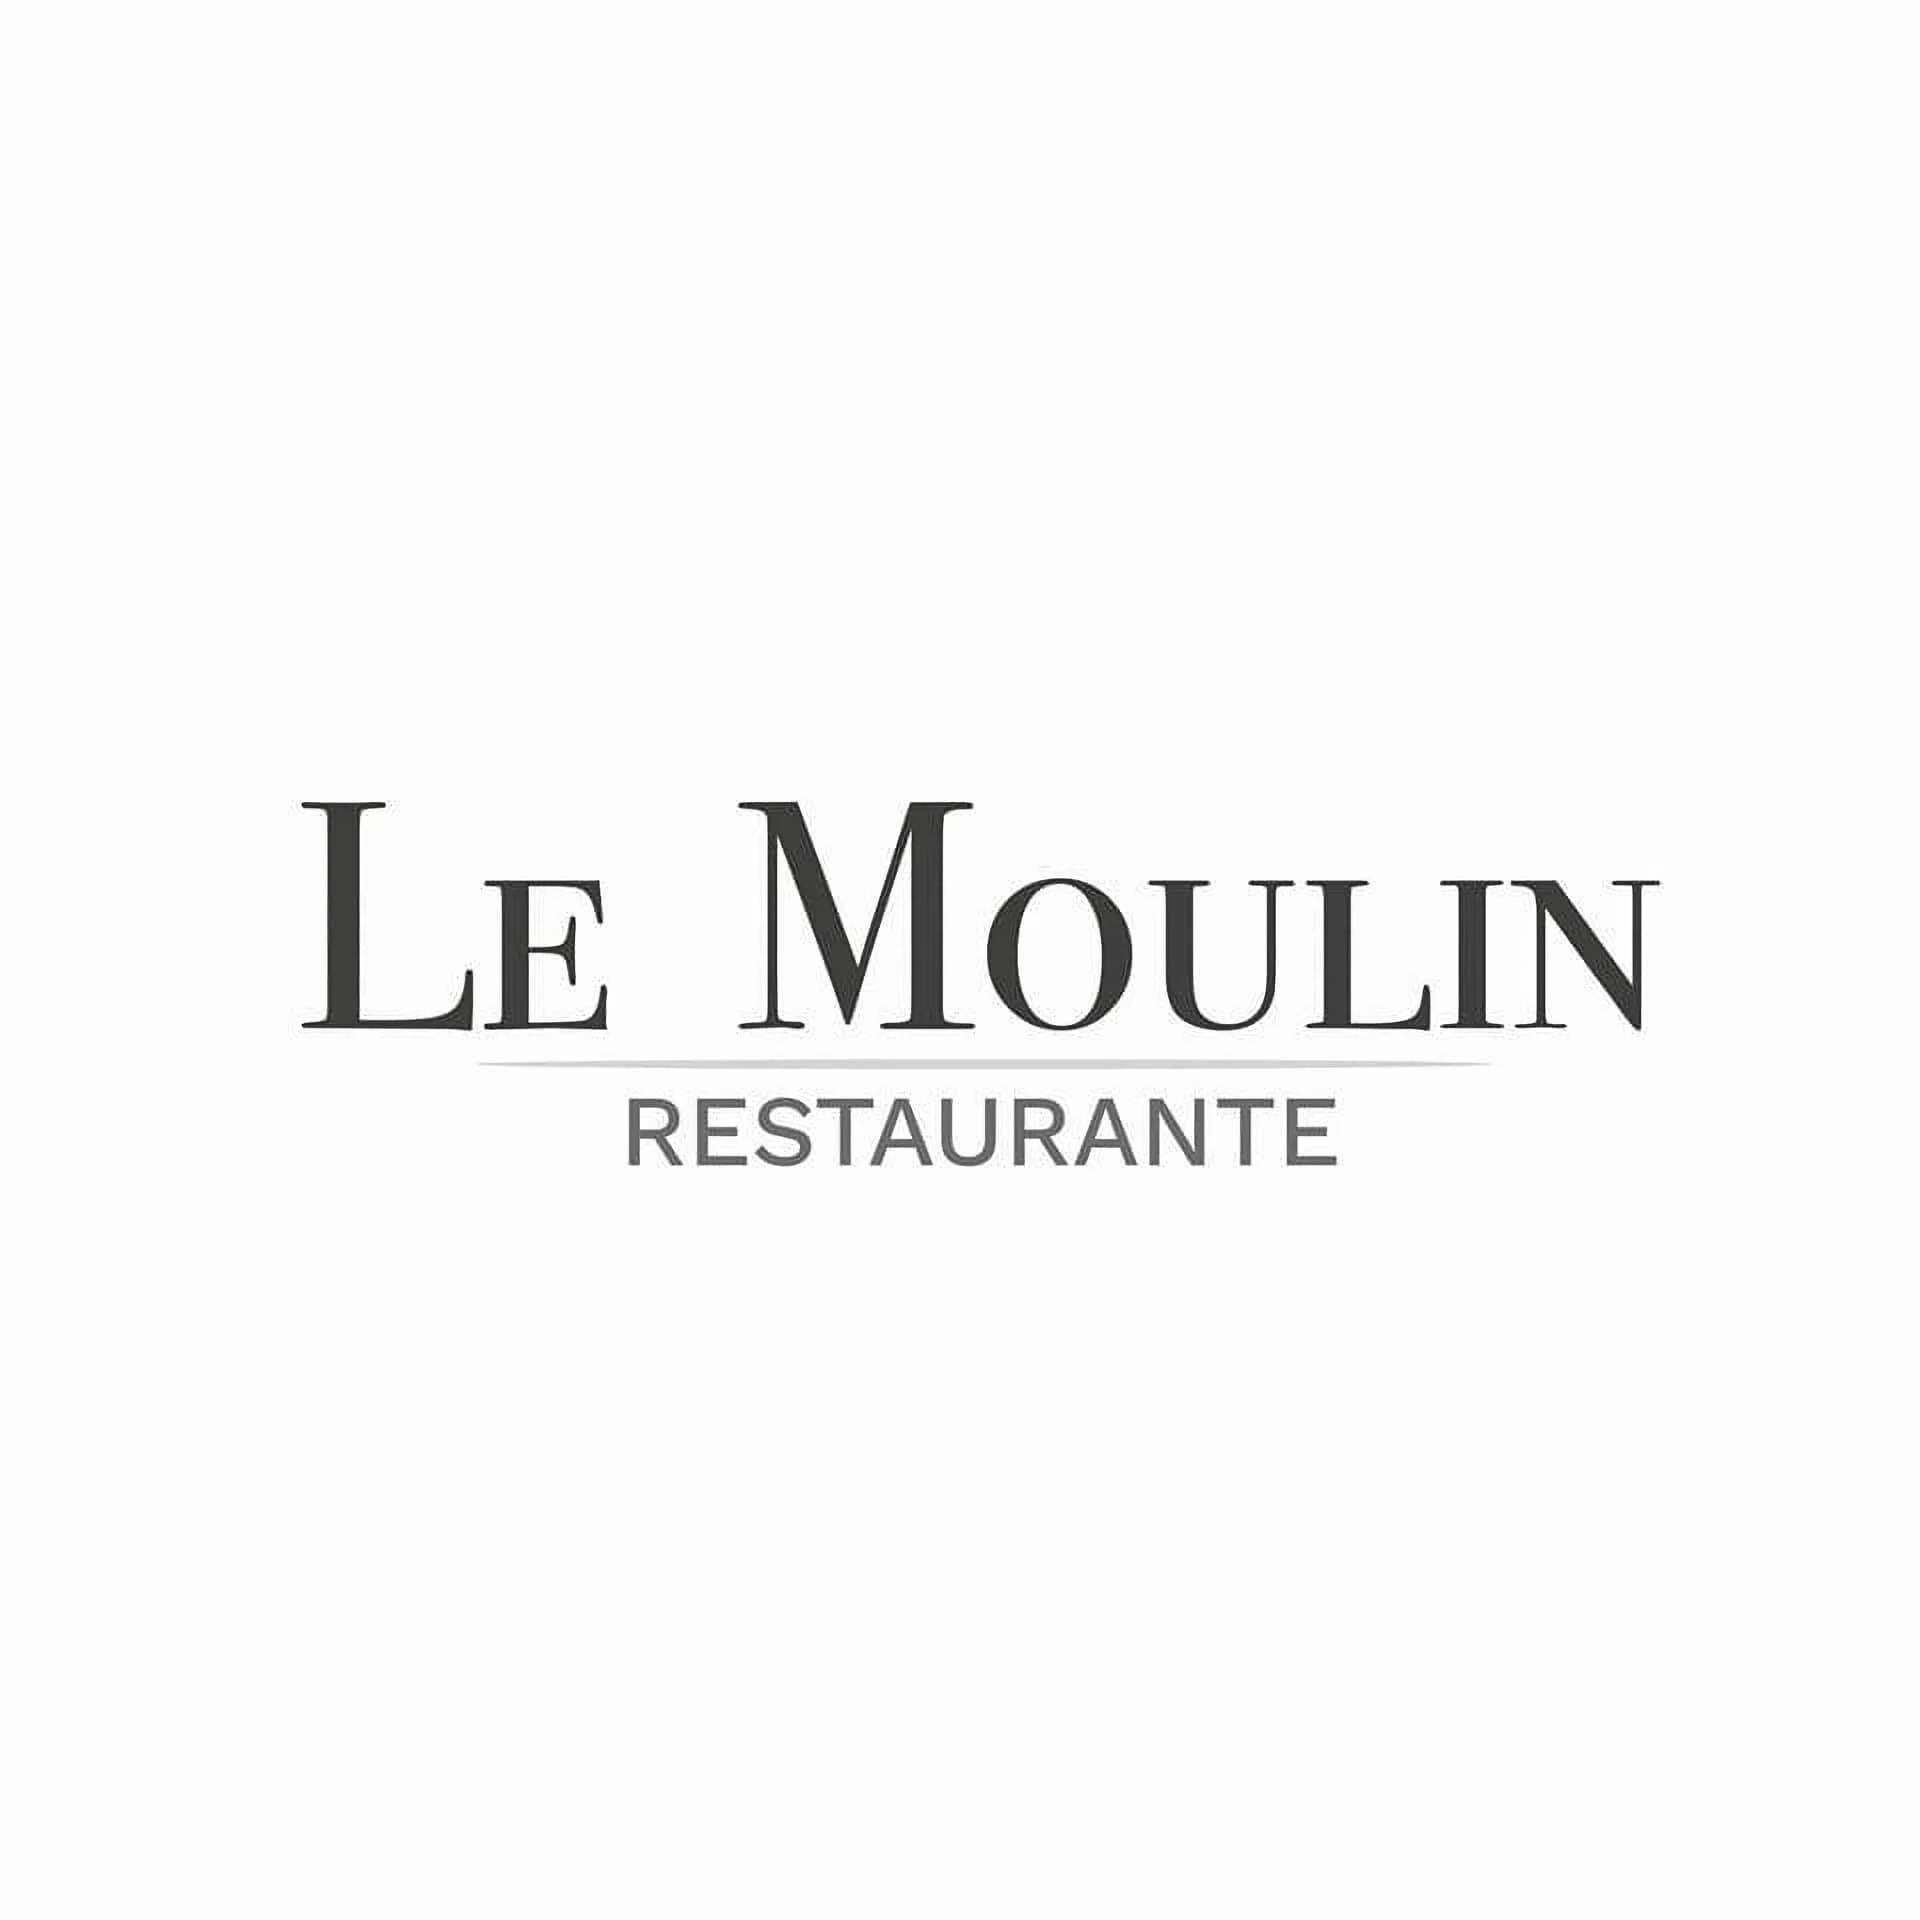 Restaurantes-le-moulin-restaurante-17961